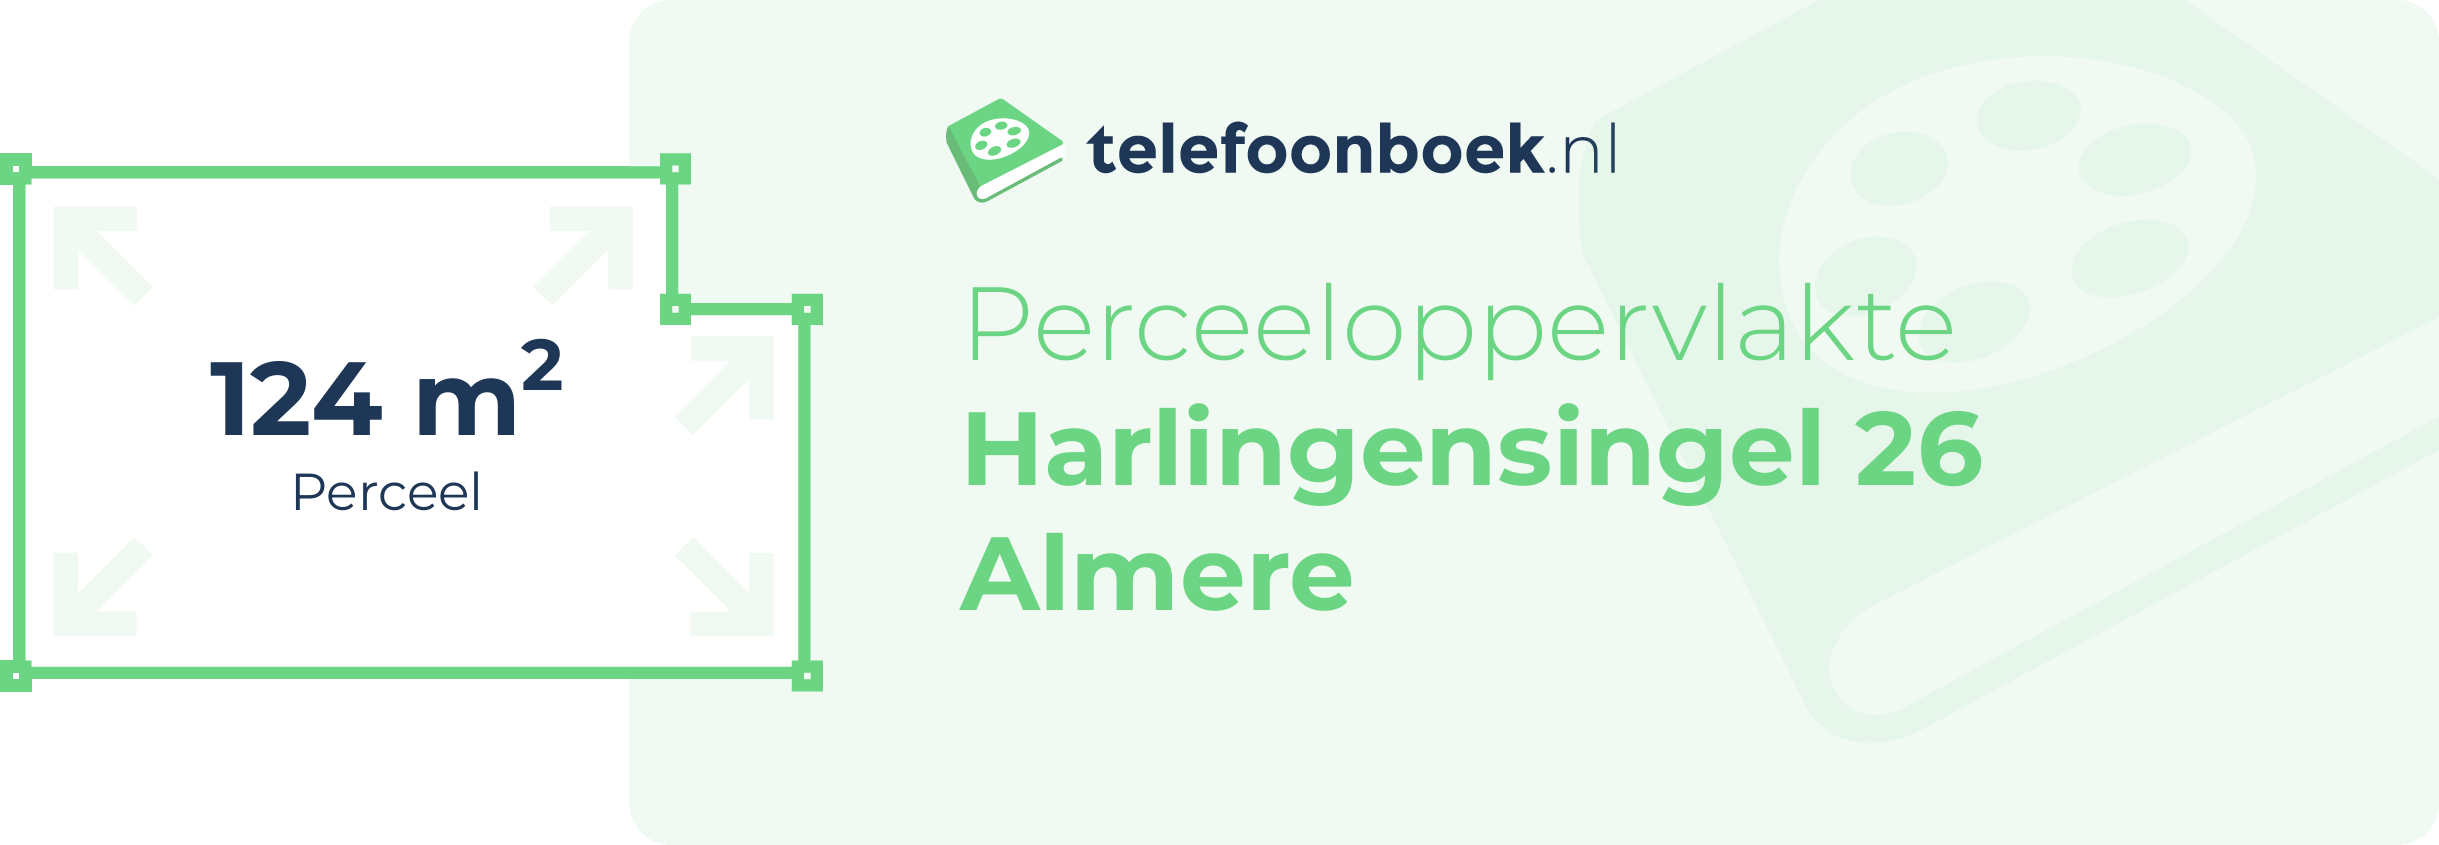 Perceeloppervlakte Harlingensingel 26 Almere